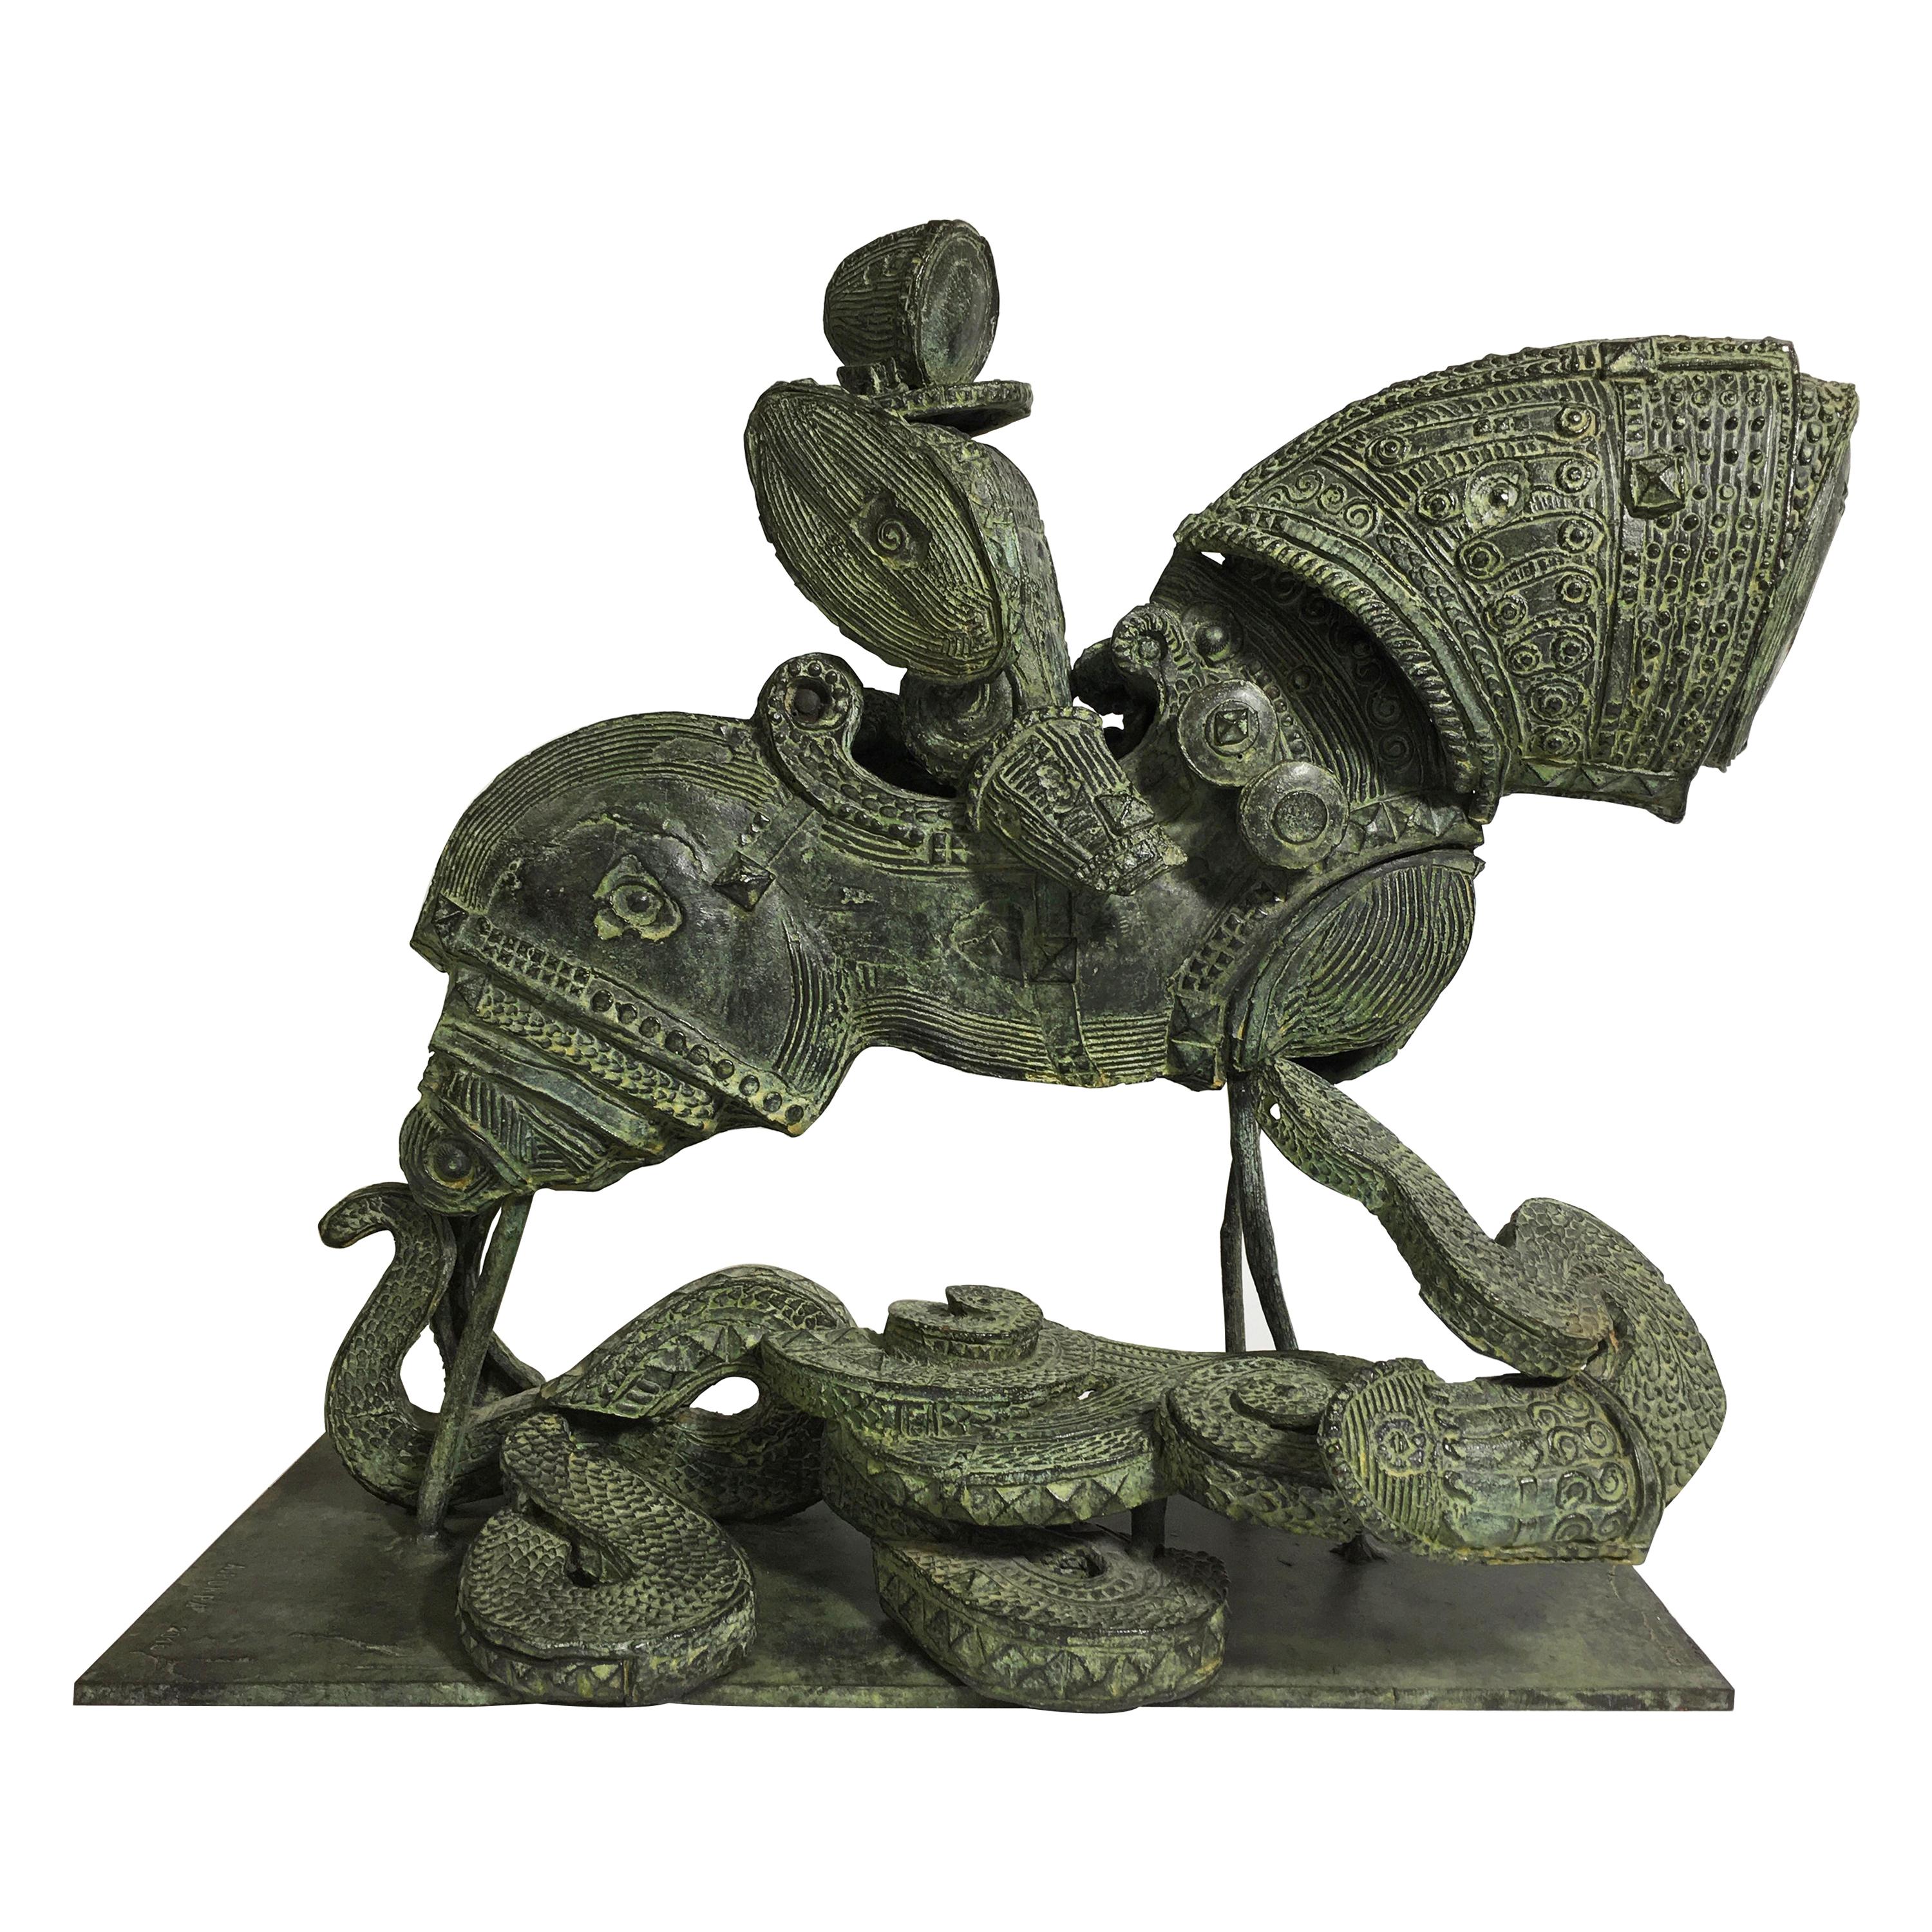 Adriano Pompa "San Giorgio und der Drache" Bronzeskulptur